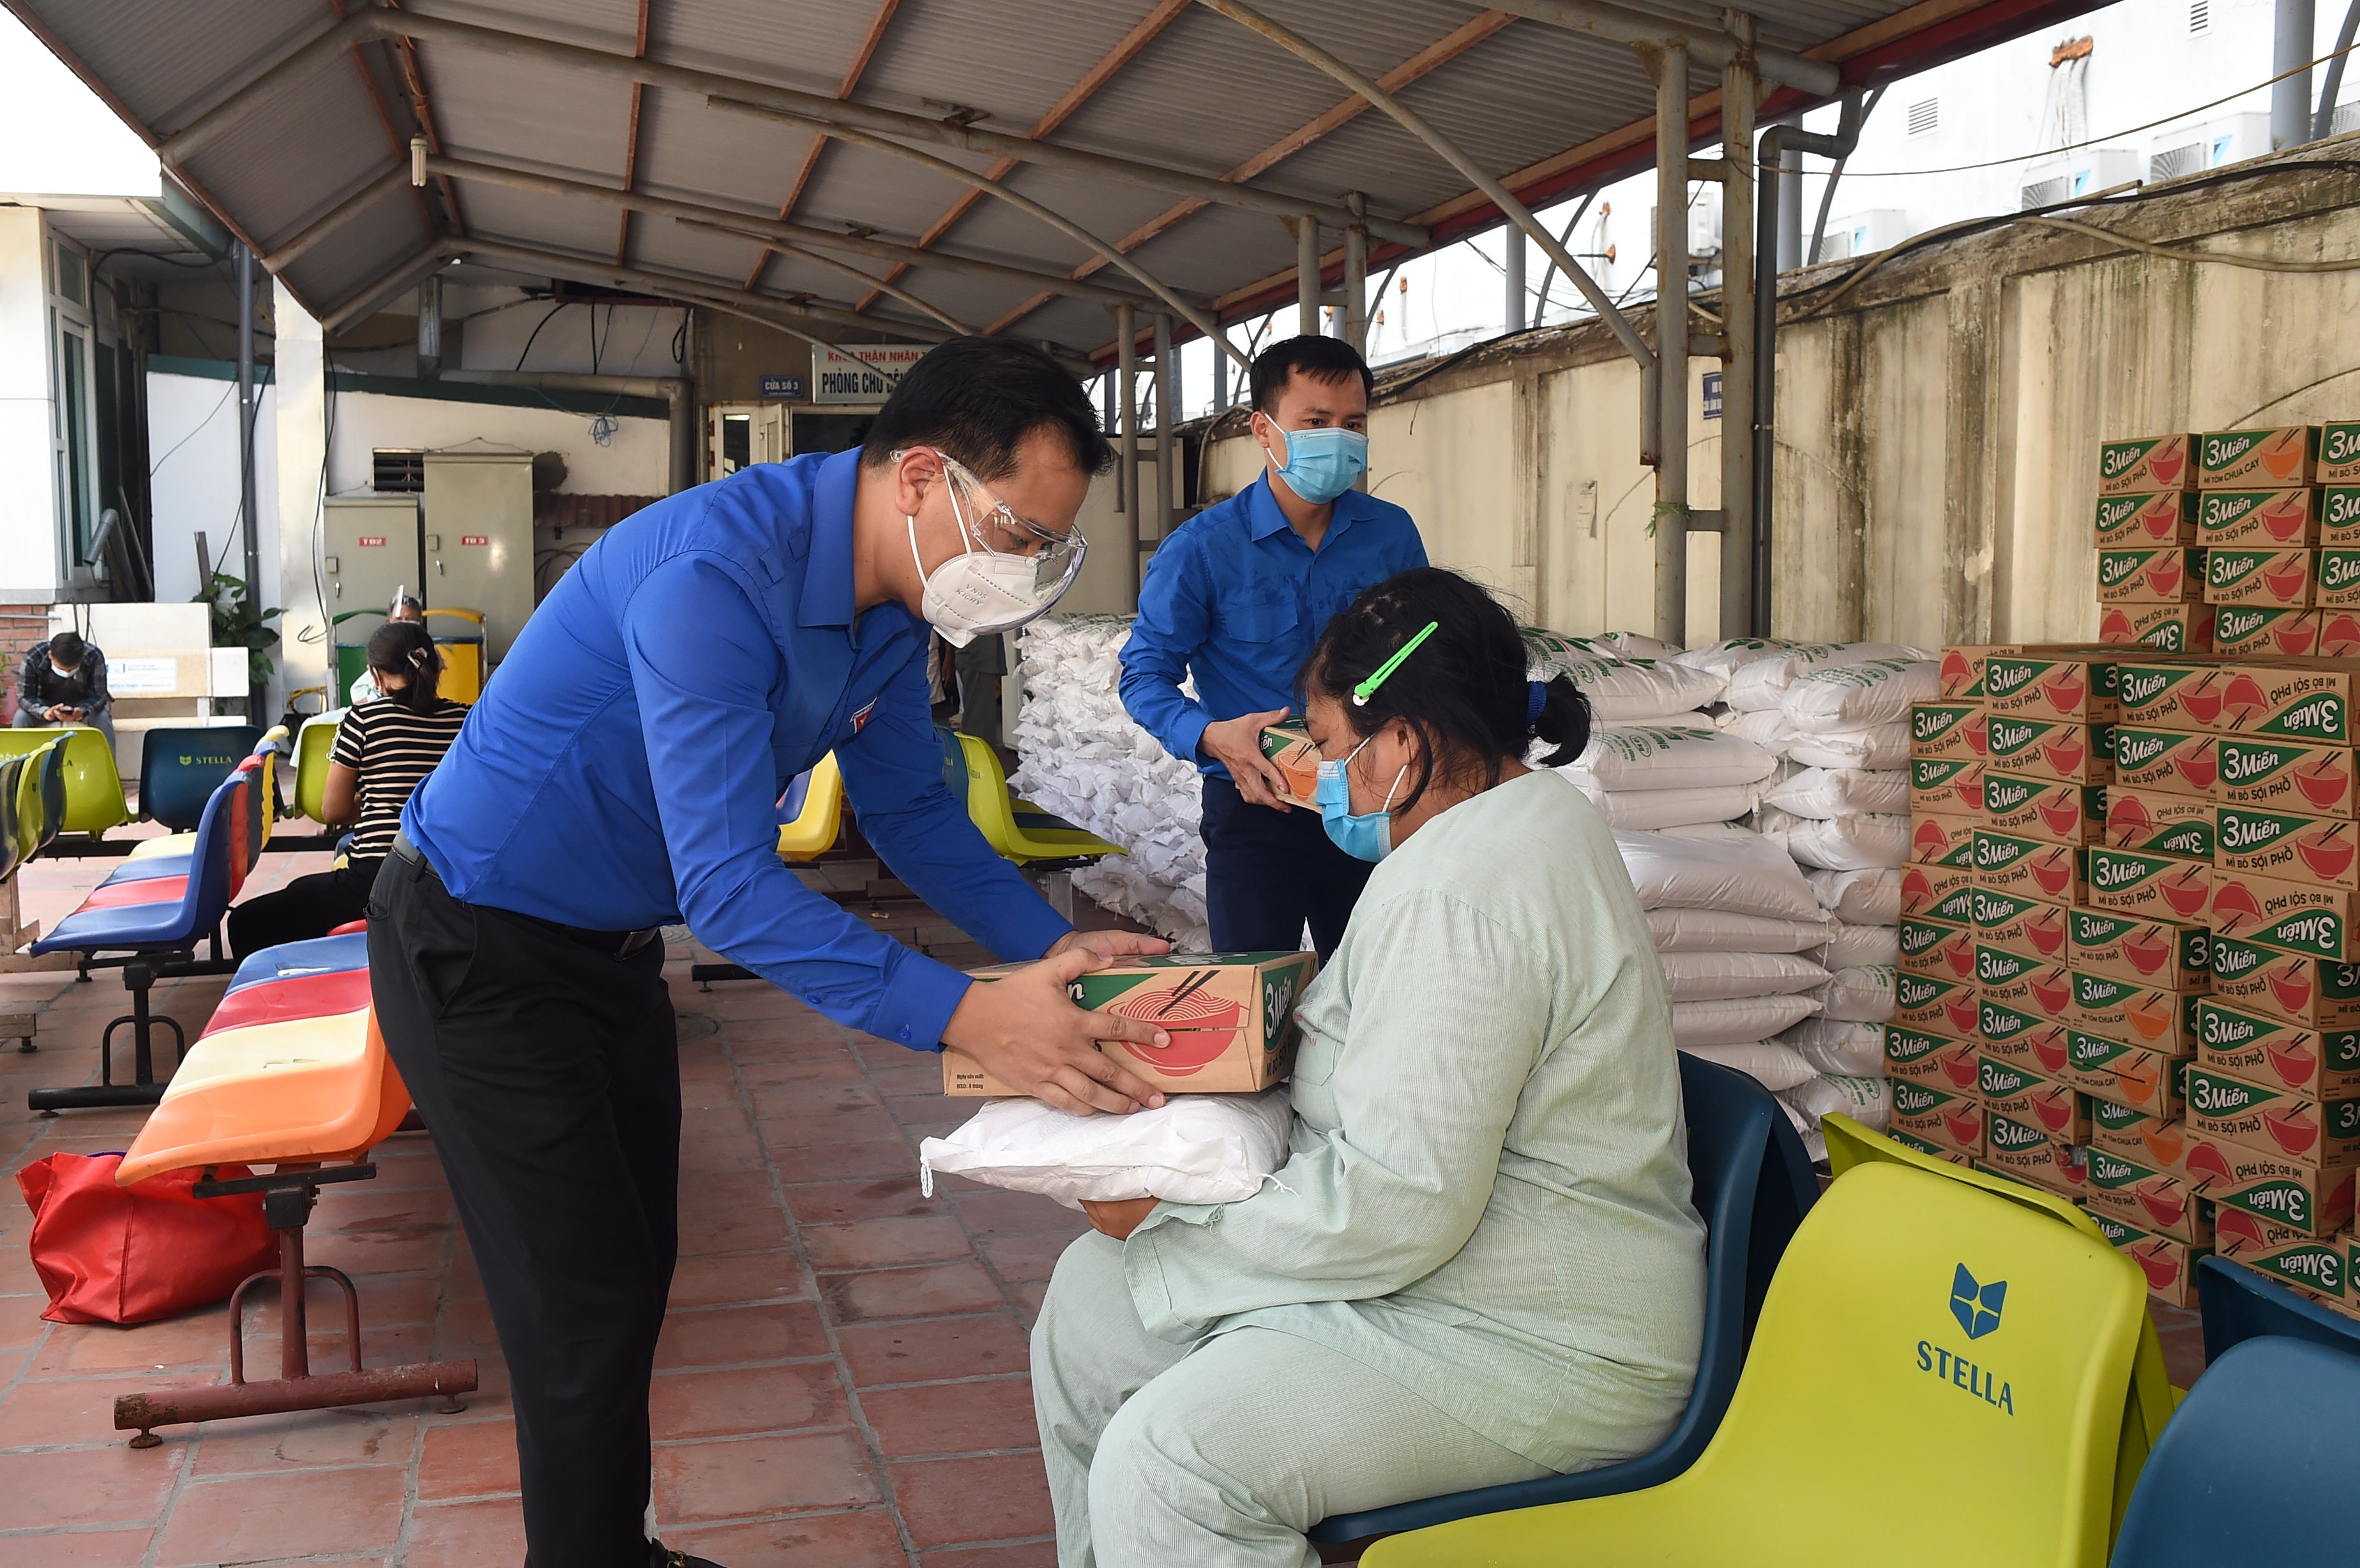 mỗi suất gồm 10 kg gạo, 1 thùng mì tôm), cho 470 bệnh nhân và người nhà bệnh nhân đang điều trị dài ngày tại Bệnh viện Thận Hà Nộ